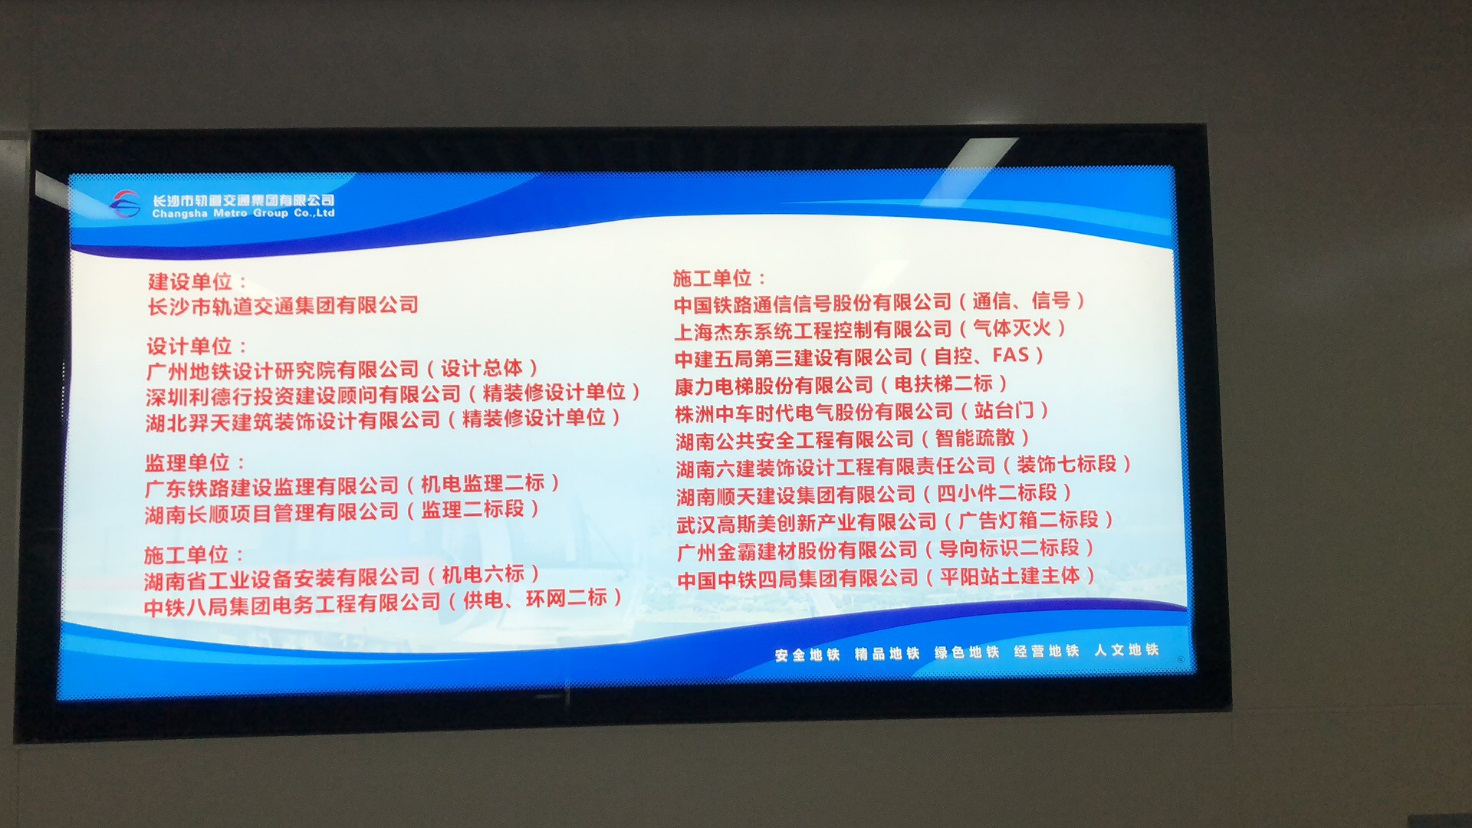 长沙轨道交通4号线平阳站施工企业展示牌